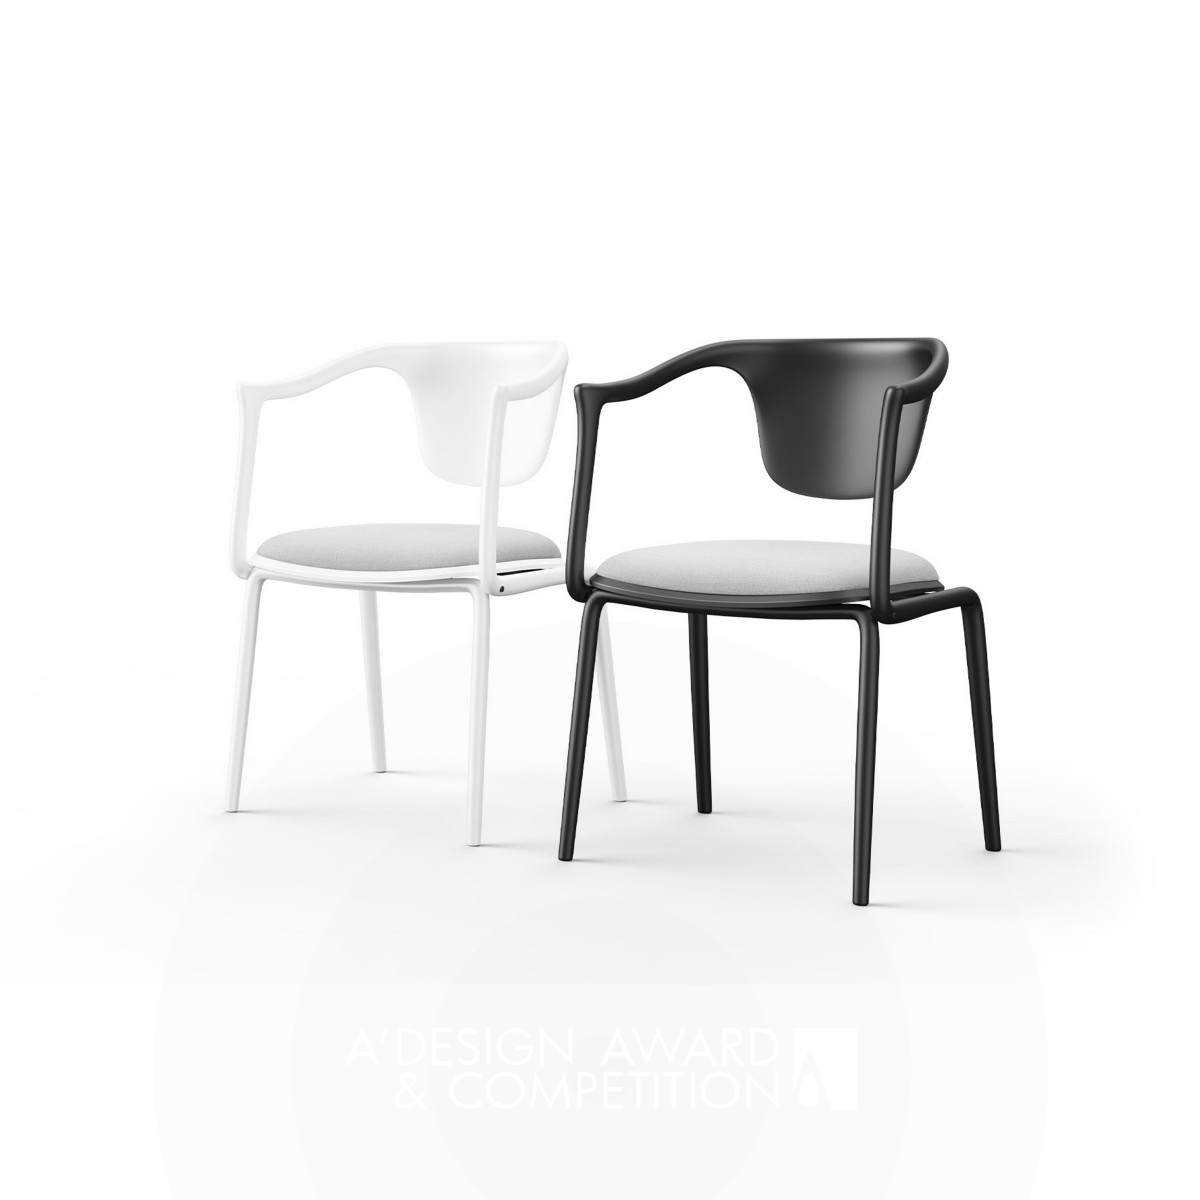 Liyue New Furniture by Haonan Zhang